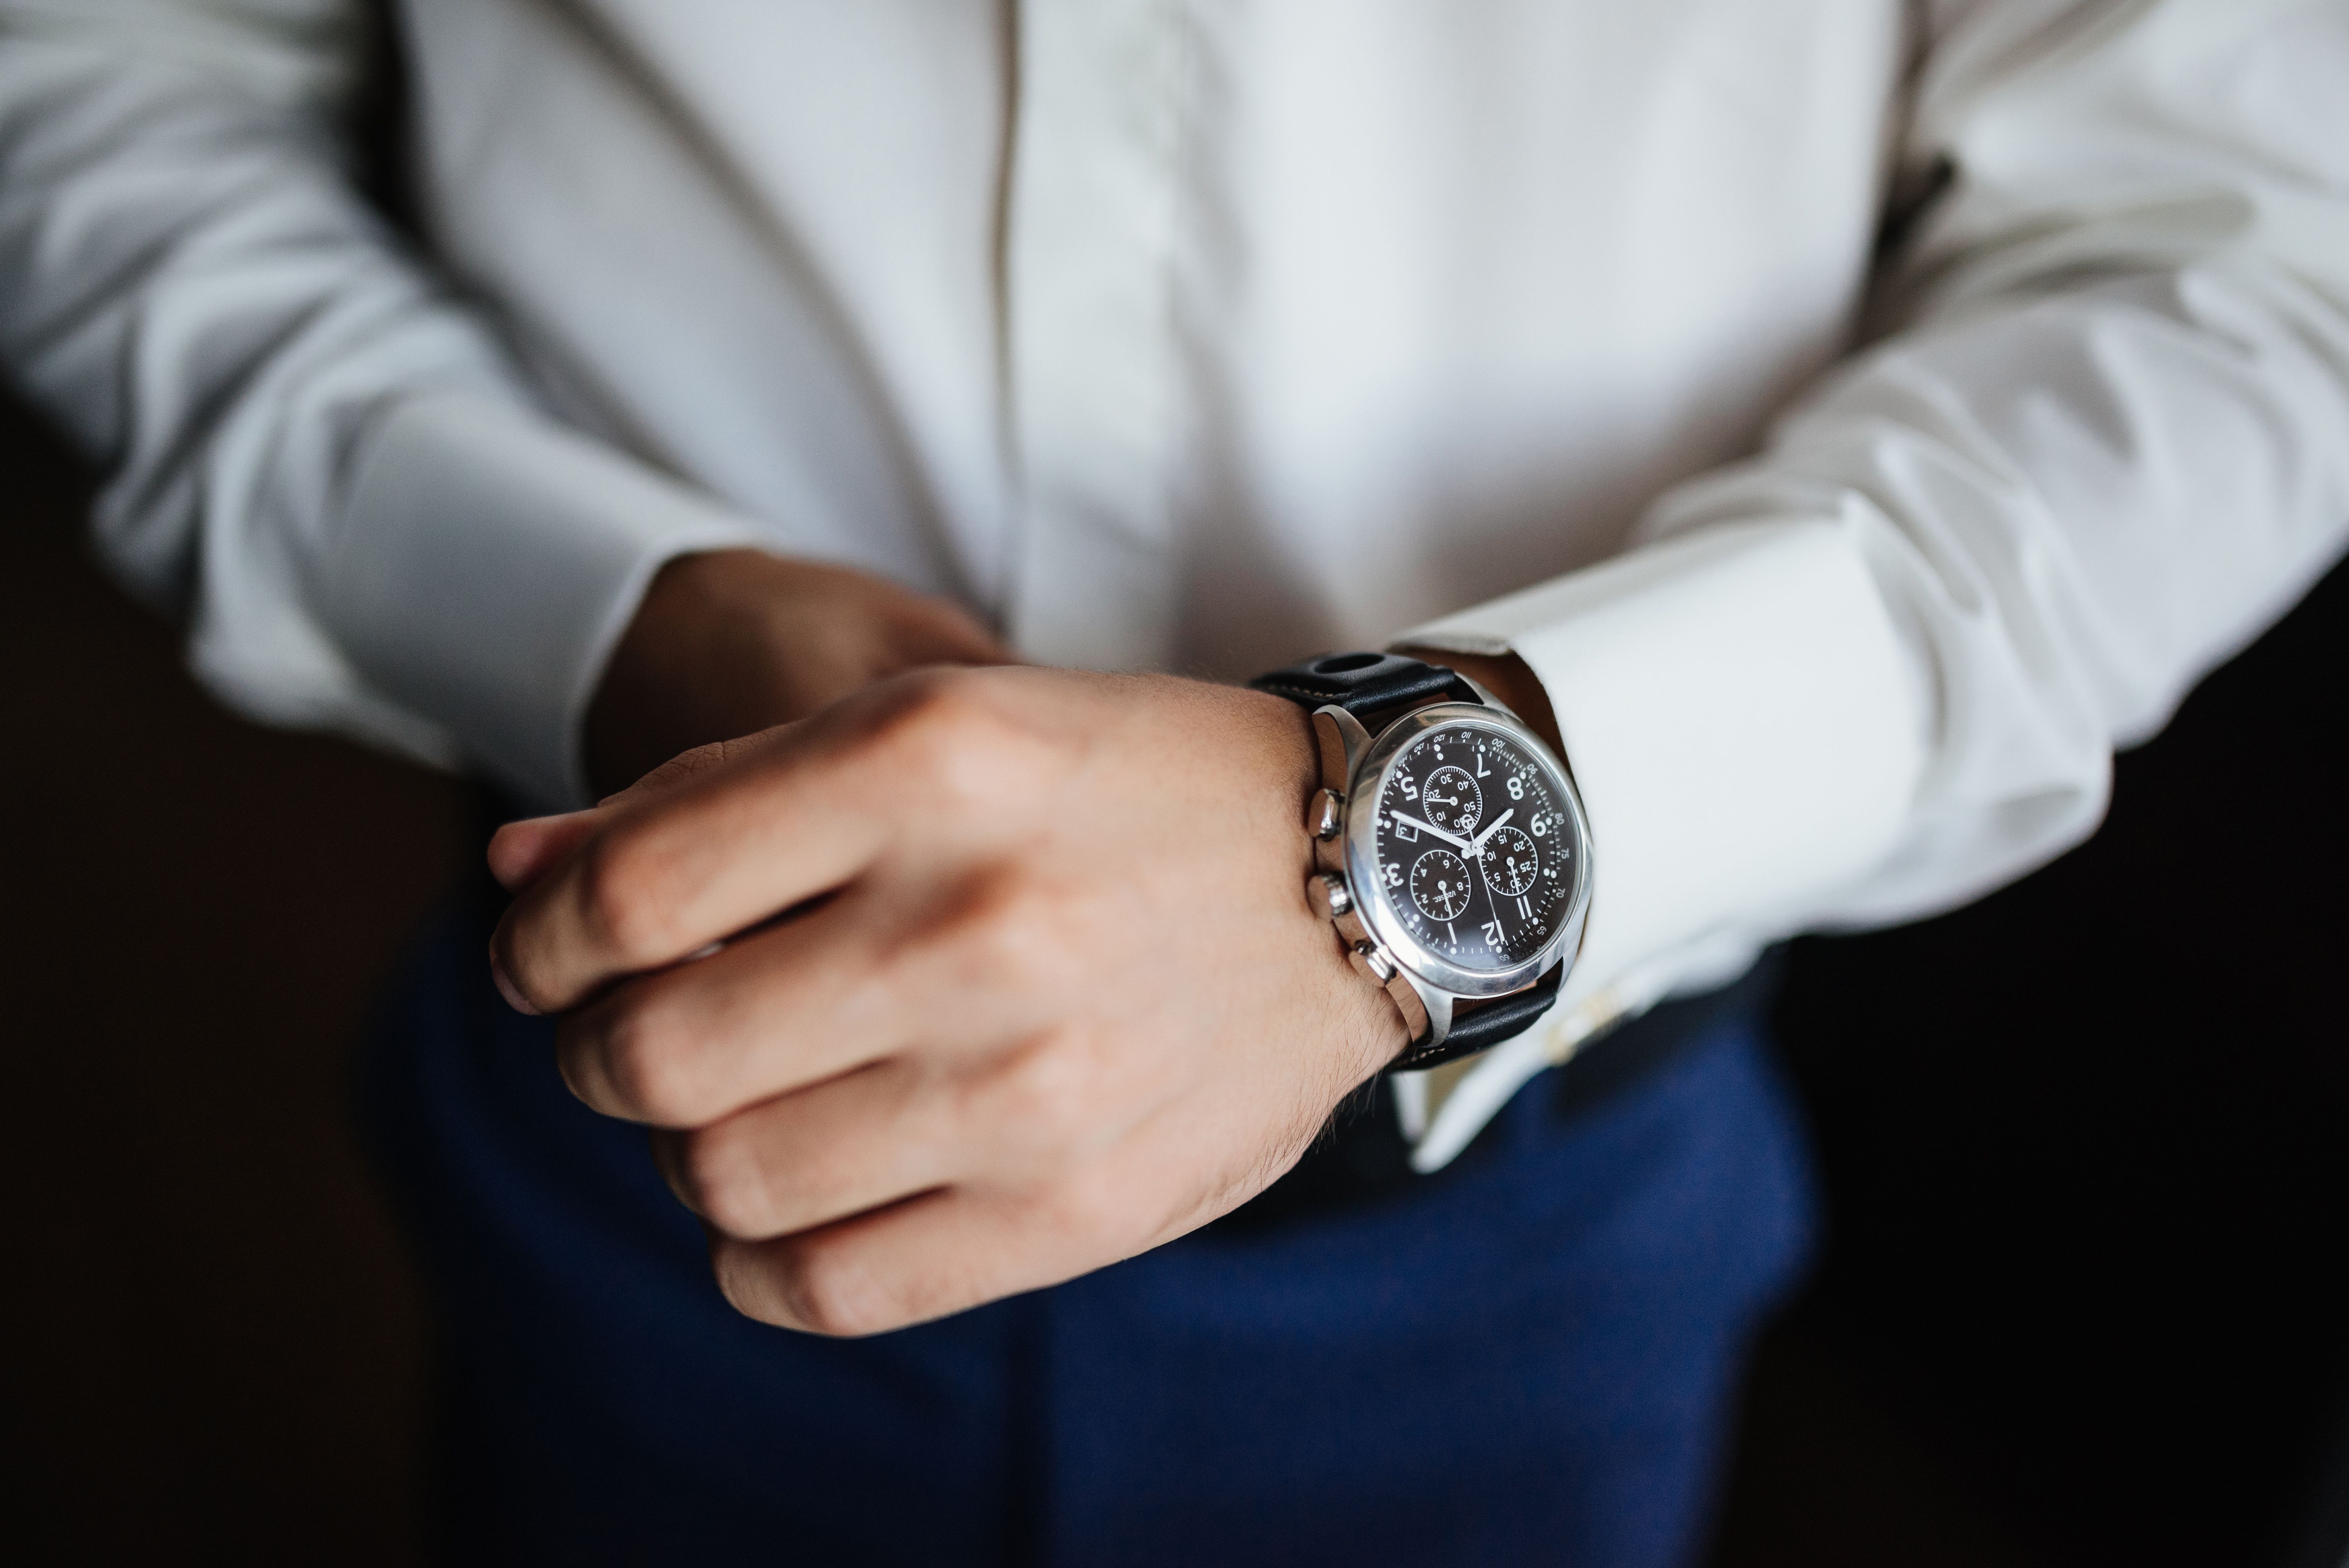 Luxury watch. Часы на руке мужчины. Мужчина с часами на руке. Рука с часами. Часы на руке у мужчины серебристые.